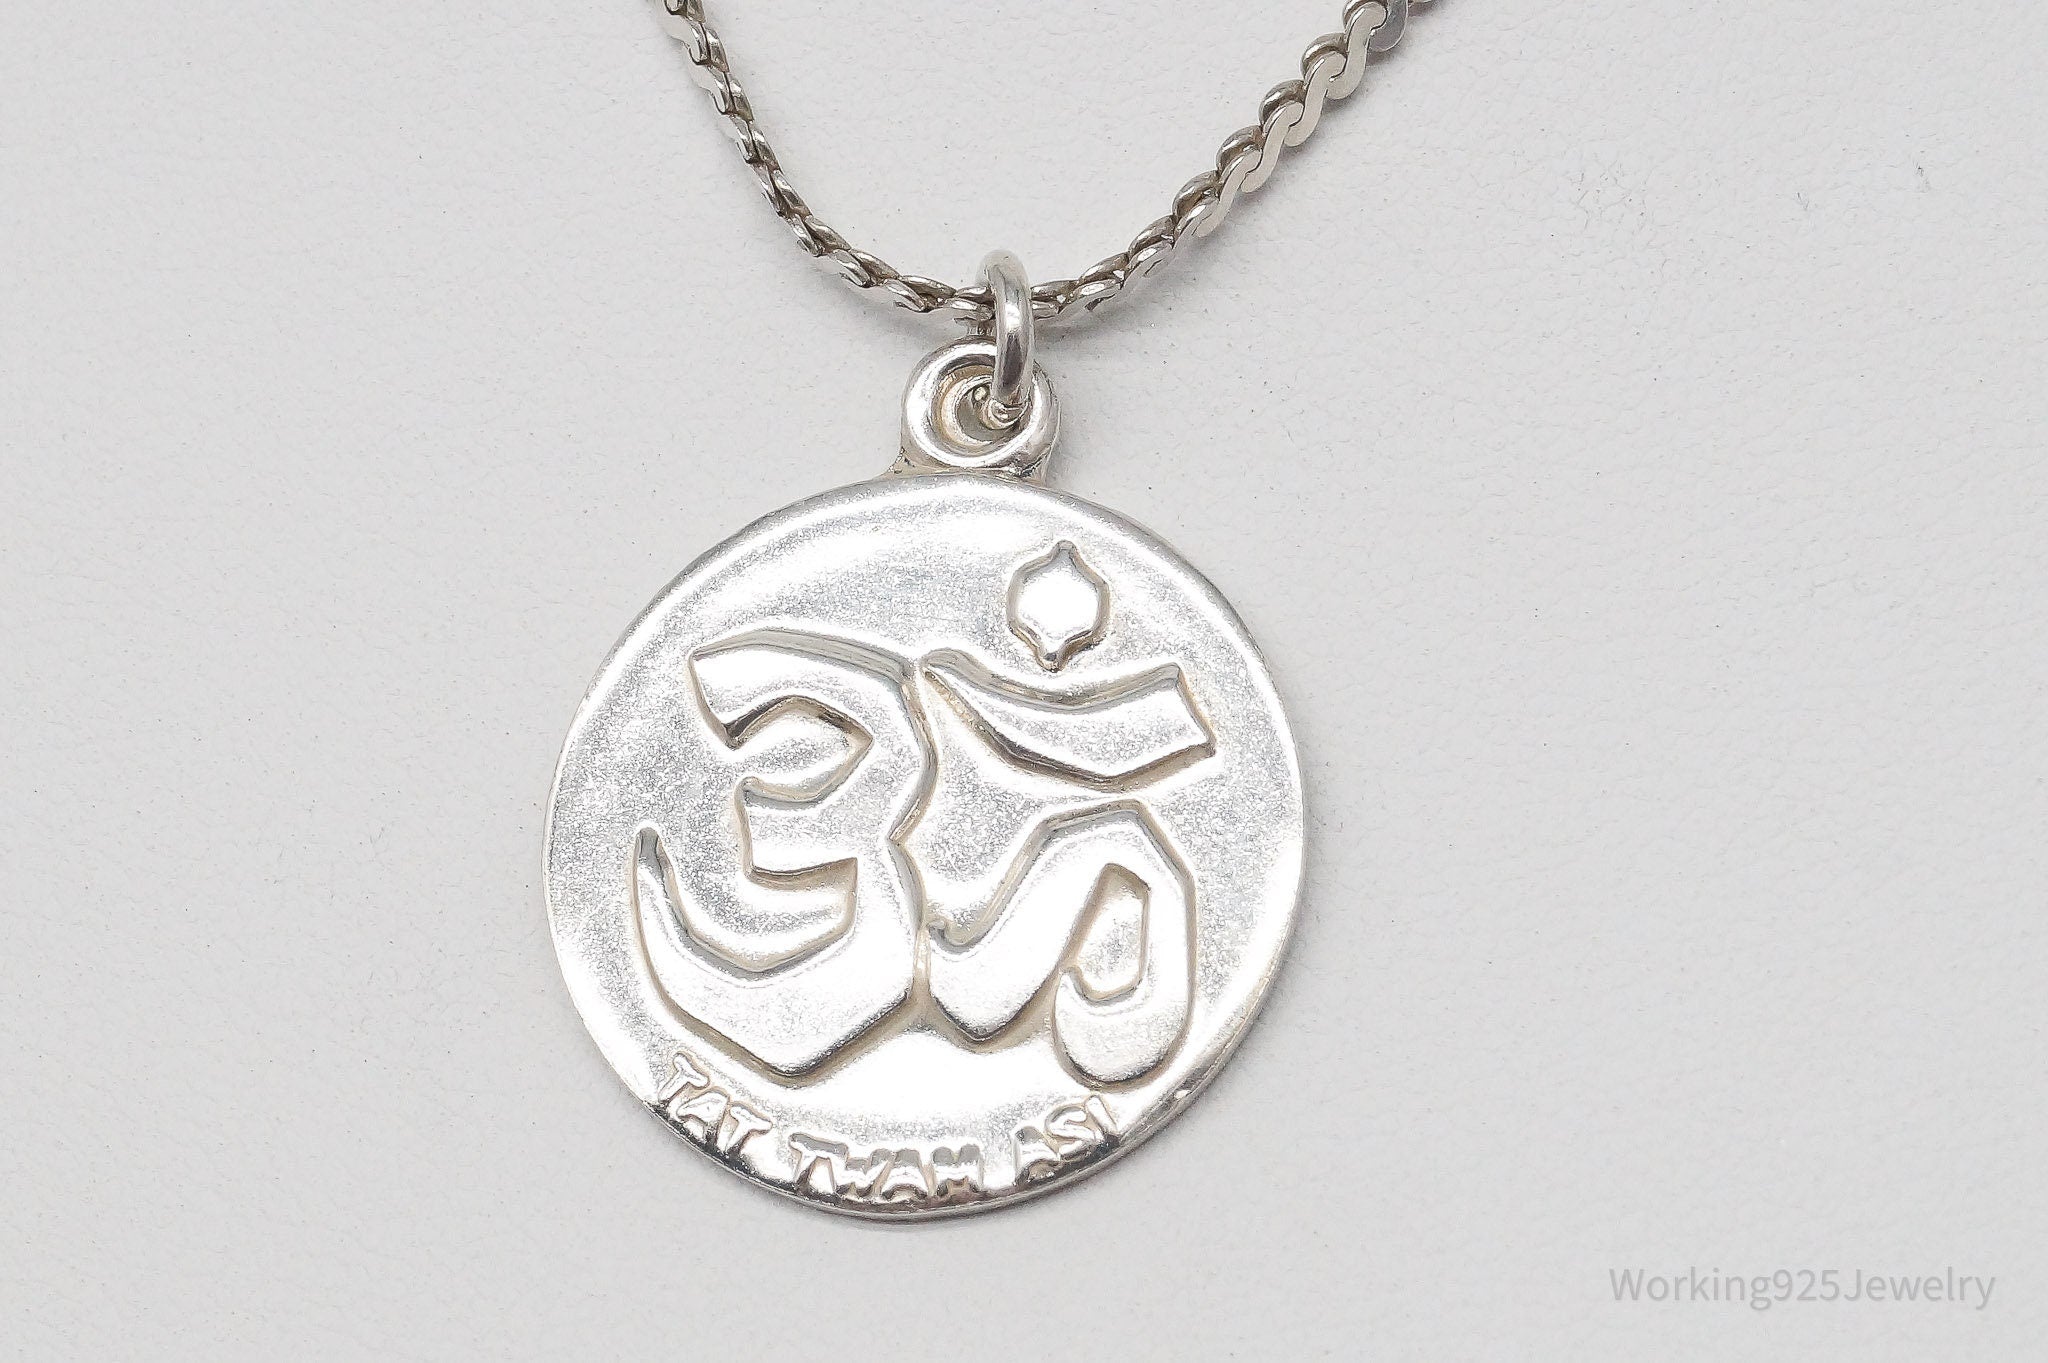 Vintage Kaag large Om Symbol Pendant Sterling Silver Necklace 18"